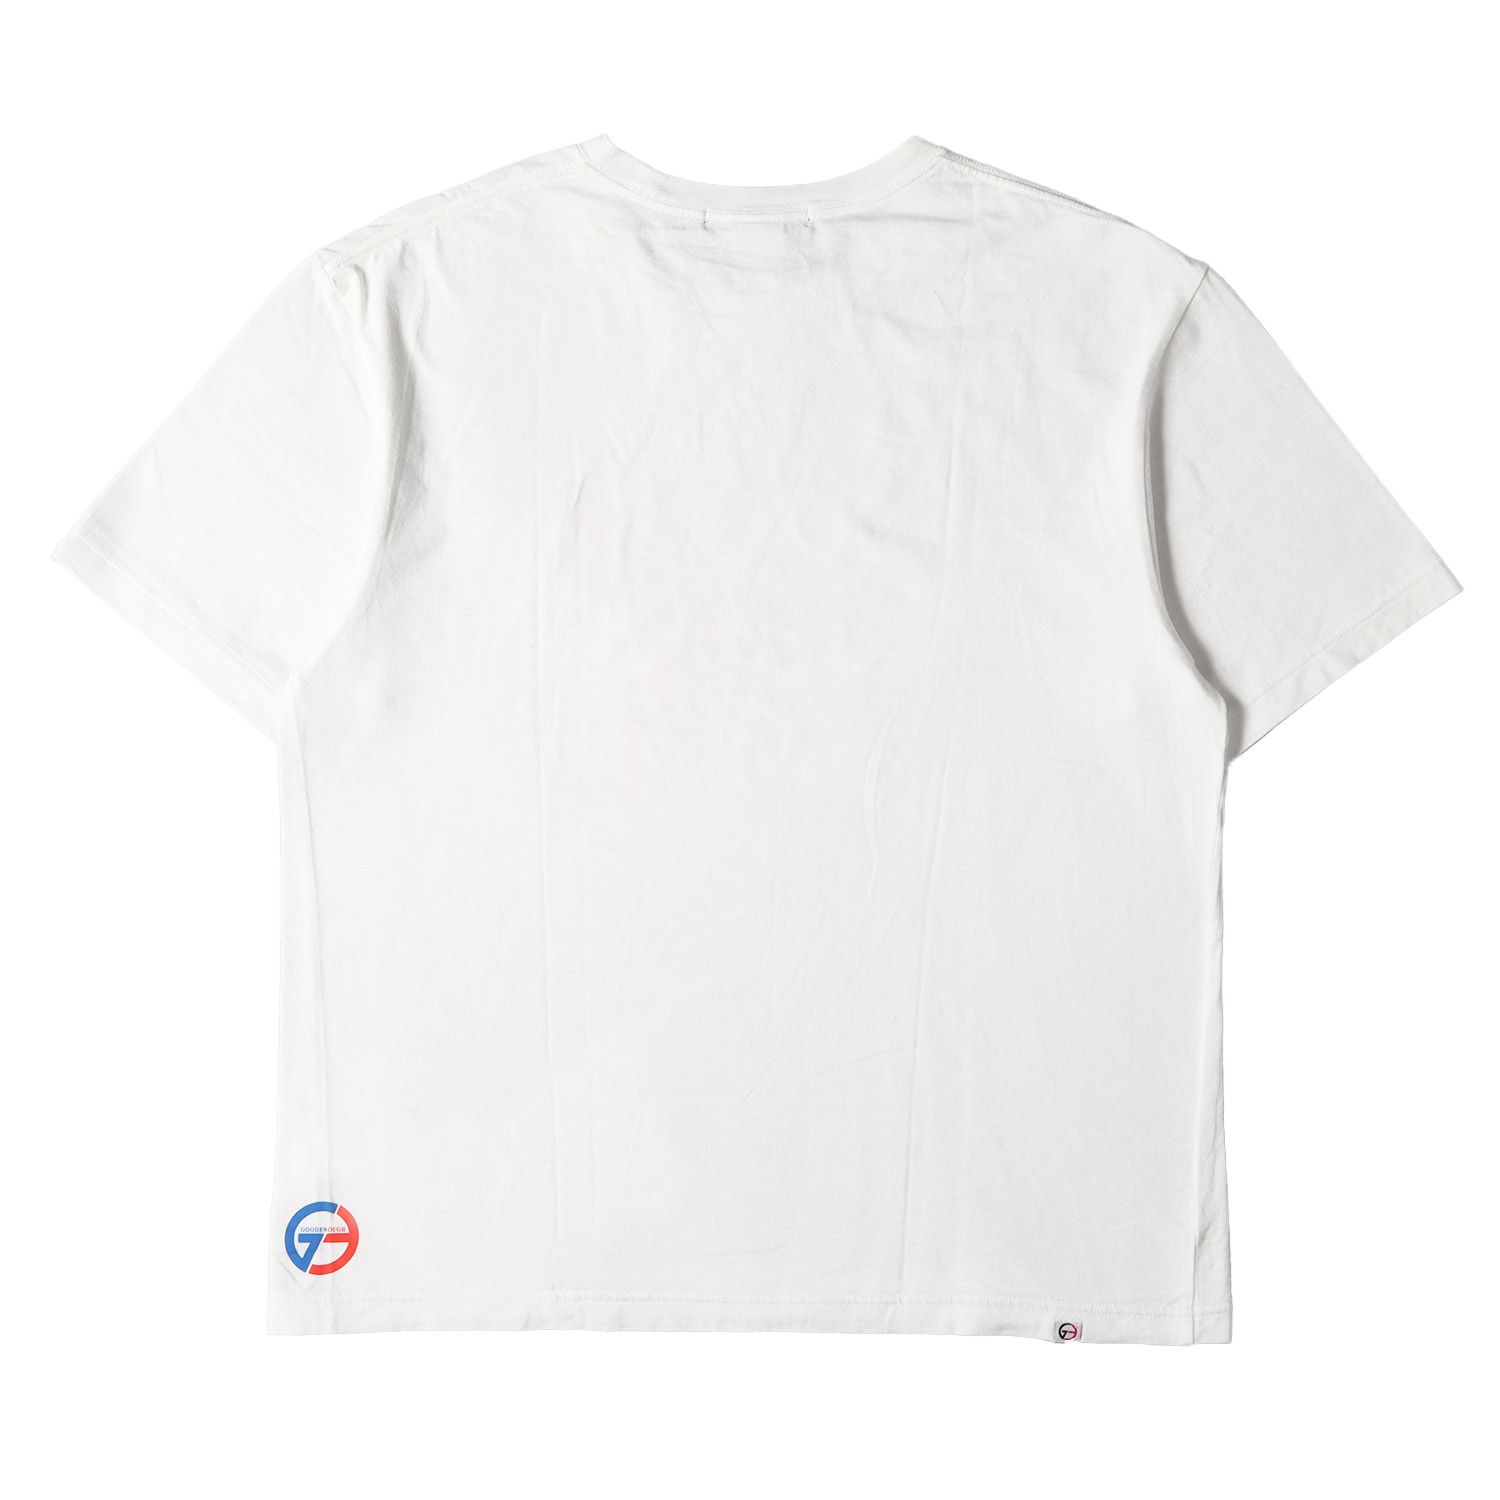 GOOD ENOUGH グッドイナフ Tシャツ サイズ:4 BASECONTROL ブランドロゴ プリント クルーネック 半袖 Tシャツ ホワイト 白  トップス カットソー コラボ ストリート カジュアル アウトドア ブランド